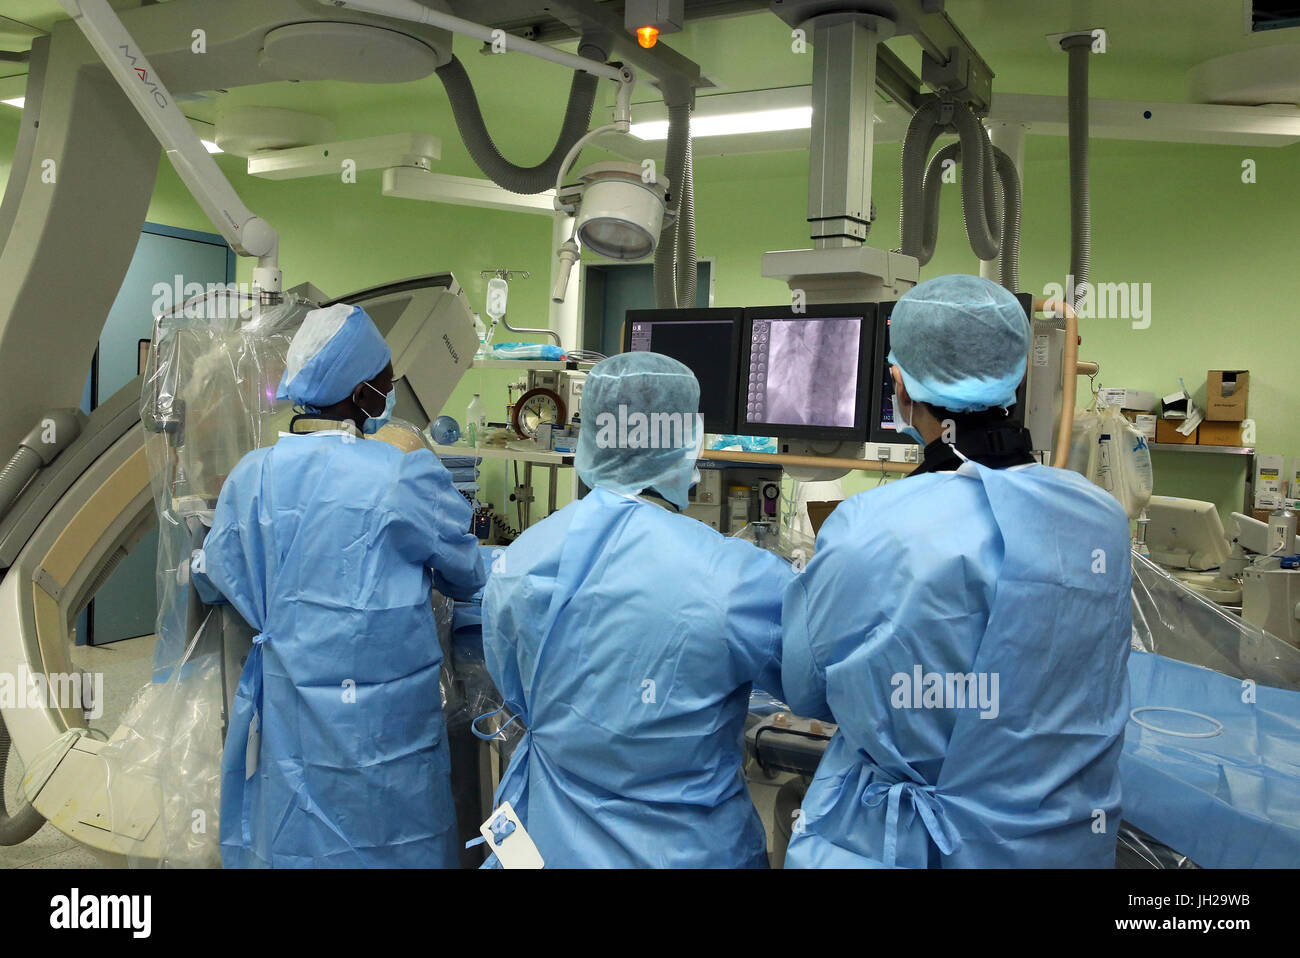 L'Institut de Cardiologie offre des soins de haute qualité aux patients vietnamiens souffrant de maladies du cœur. Laboratoire de cathétérisme. Former l'équipe médicale sénégalaise Banque D'Images